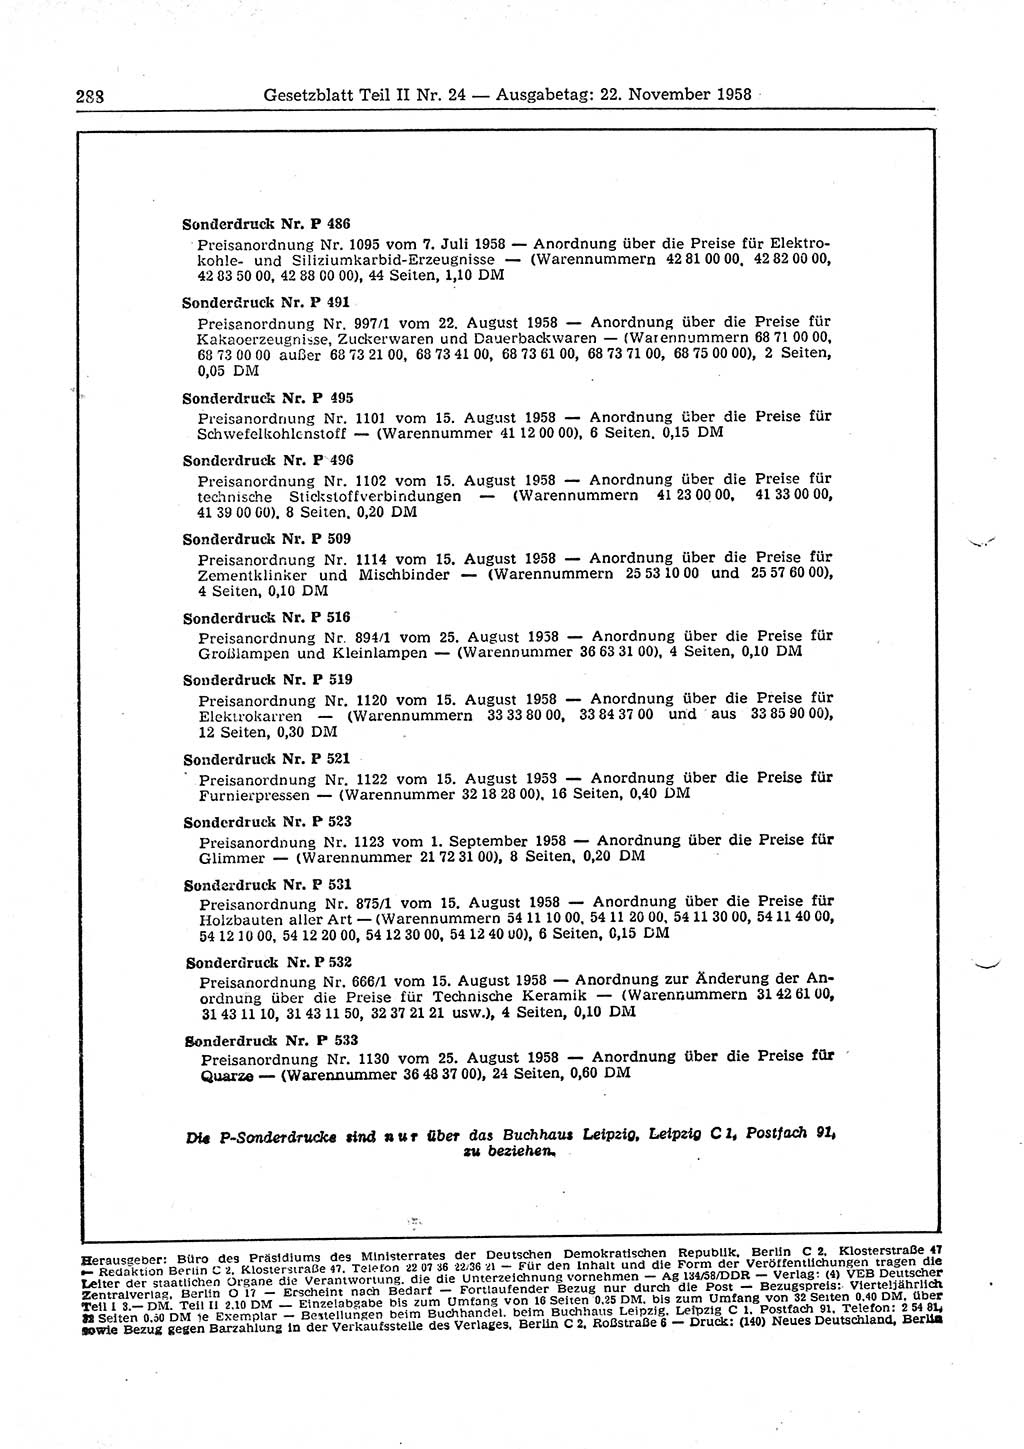 Gesetzblatt (GBl.) der Deutschen Demokratischen Republik (DDR) Teil ⅠⅠ 1958, Seite 288 (GBl. DDR ⅠⅠ 1958, S. 288)